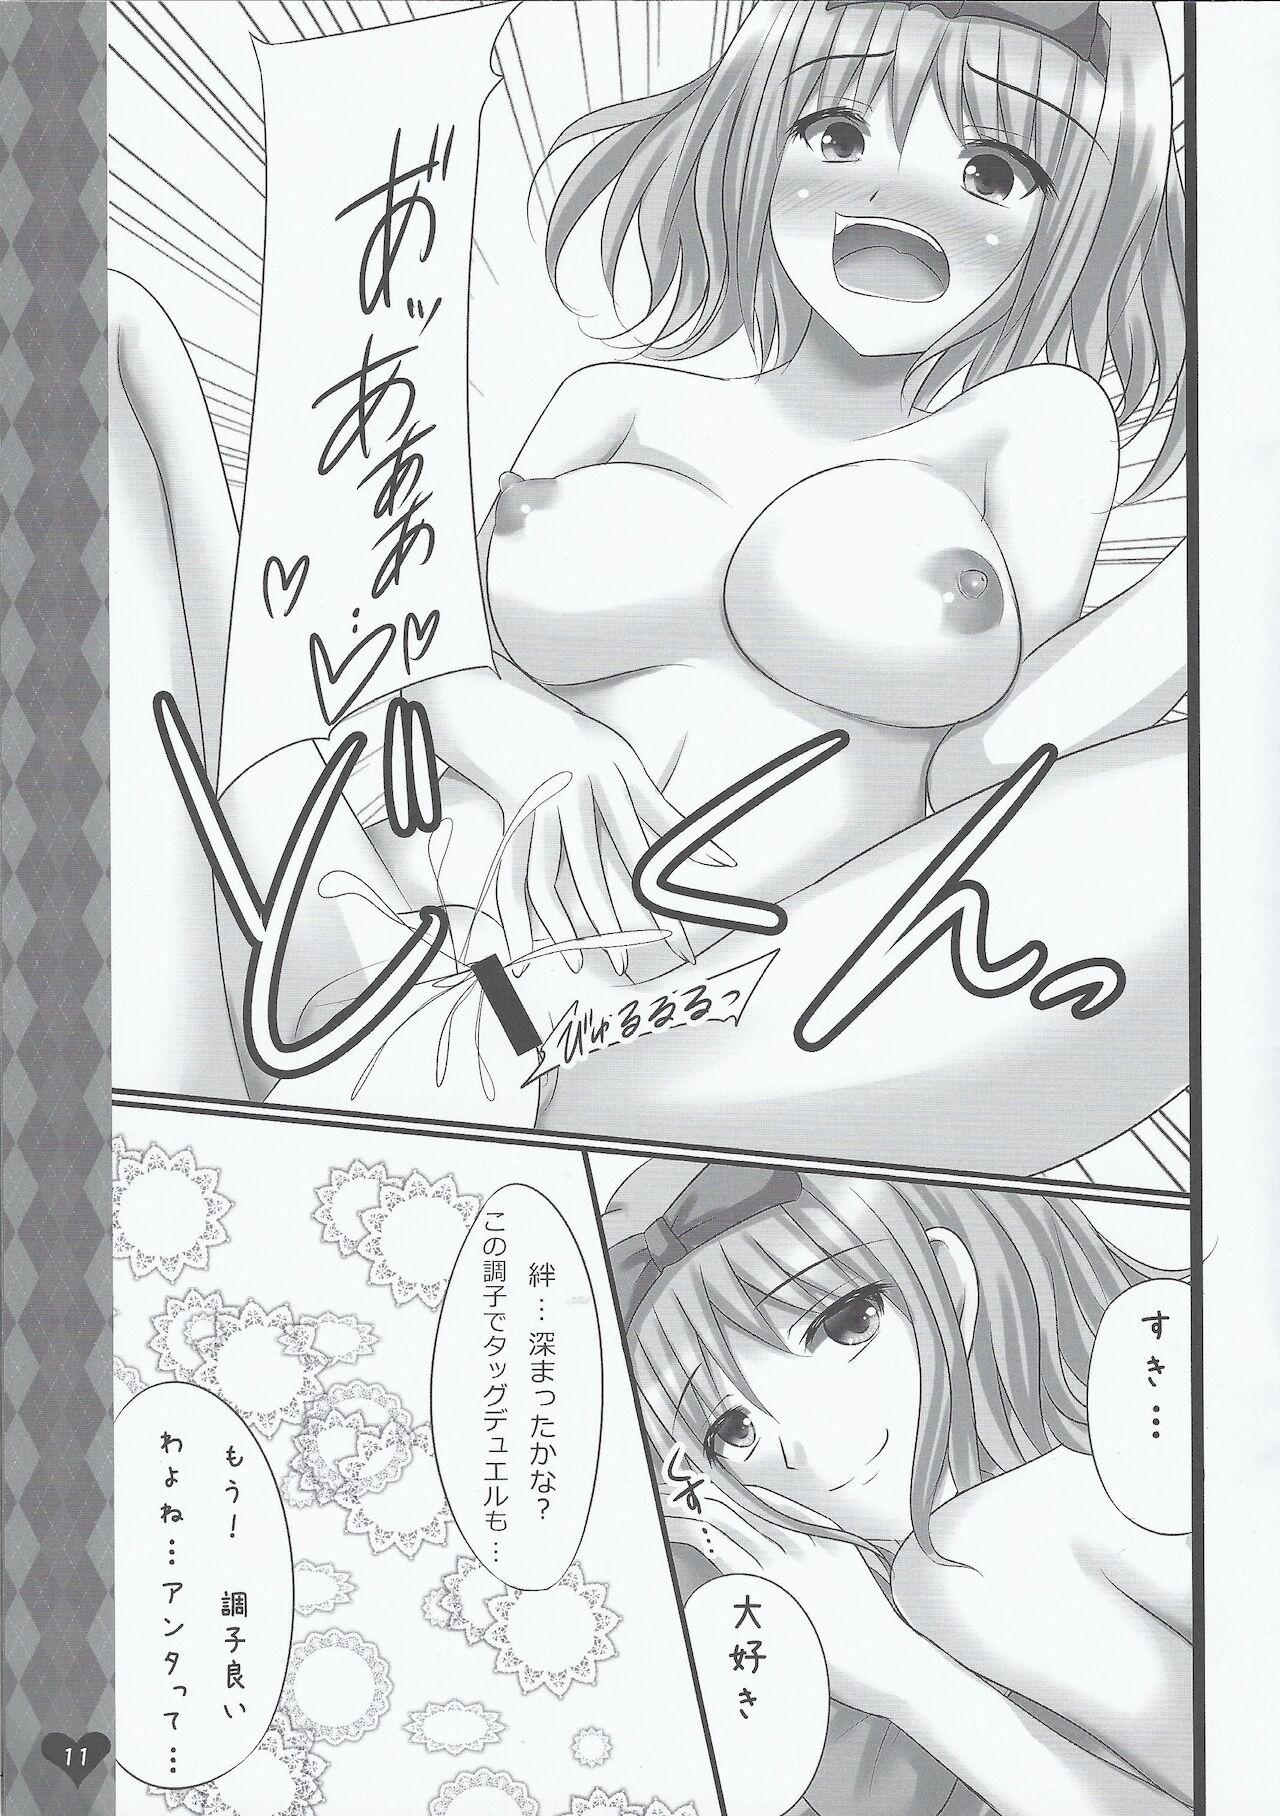 Busty Tsuan ya Yukino Tora bura busuru hon - Yu-gi-oh Yu-gi-oh 5ds Fellatio - Page 10